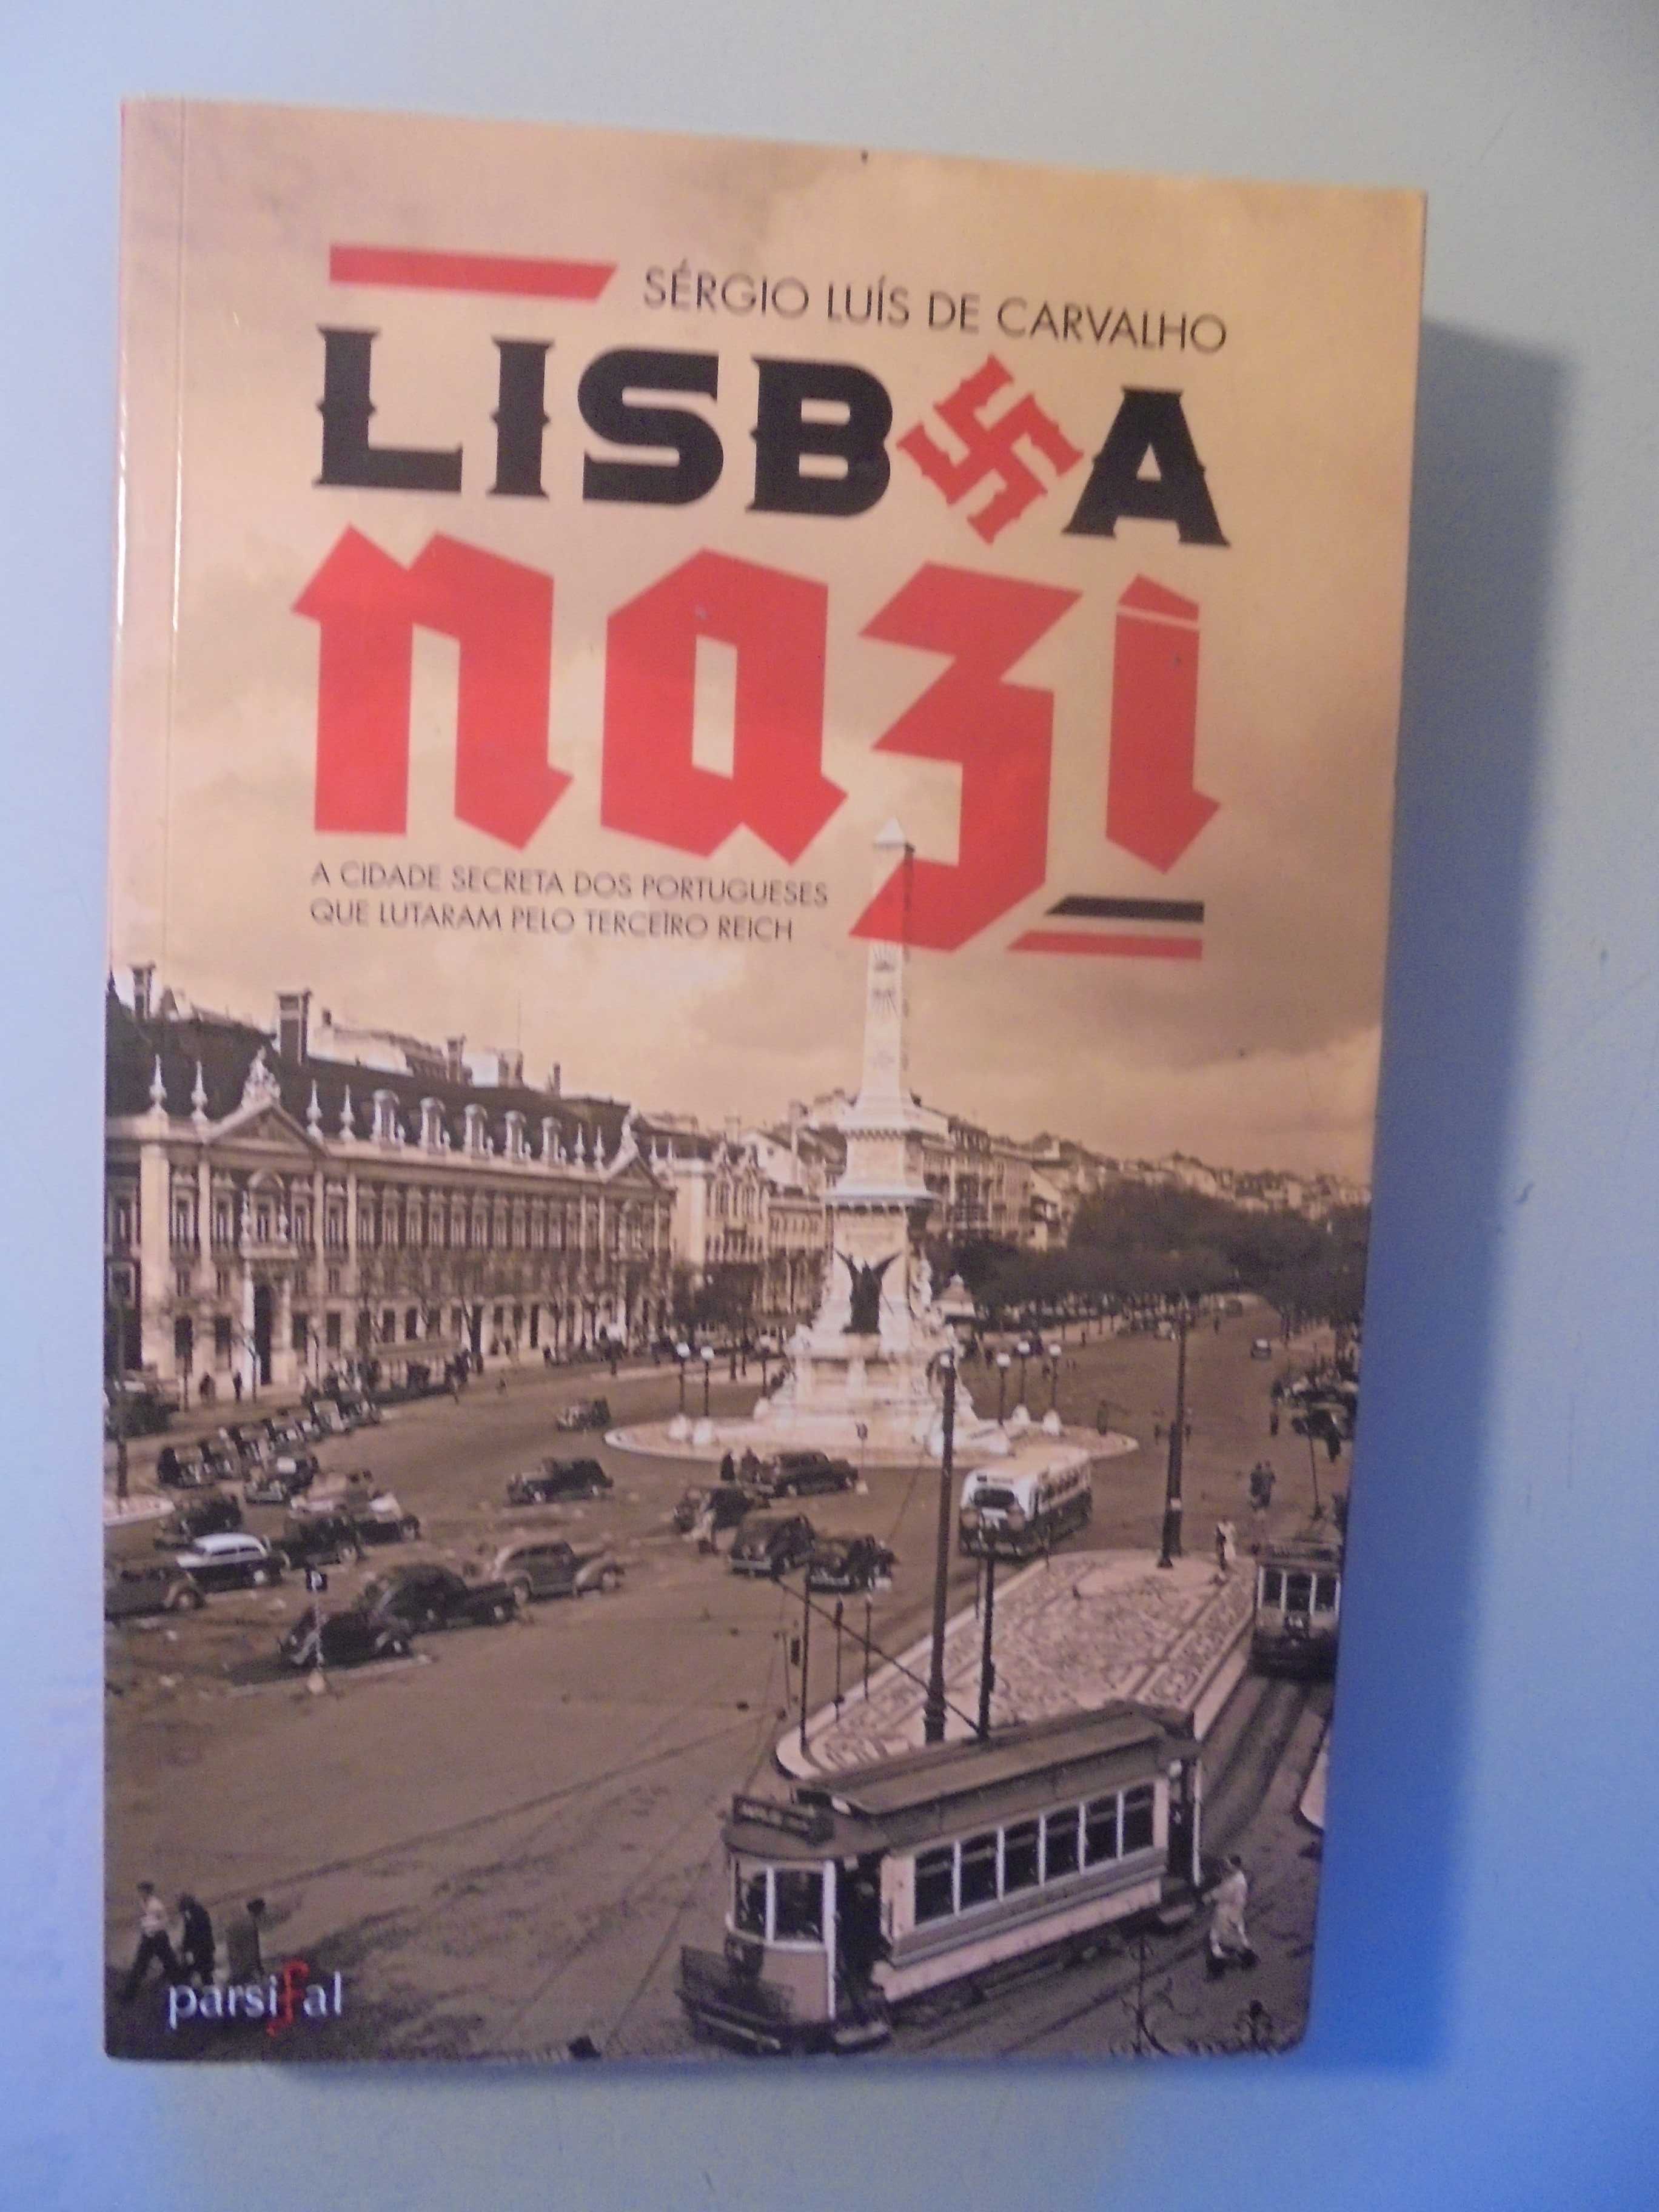 Carvalho (Sérgio Luís de);Lisboa Nazi-A Cidade Secreta dos Portugueses